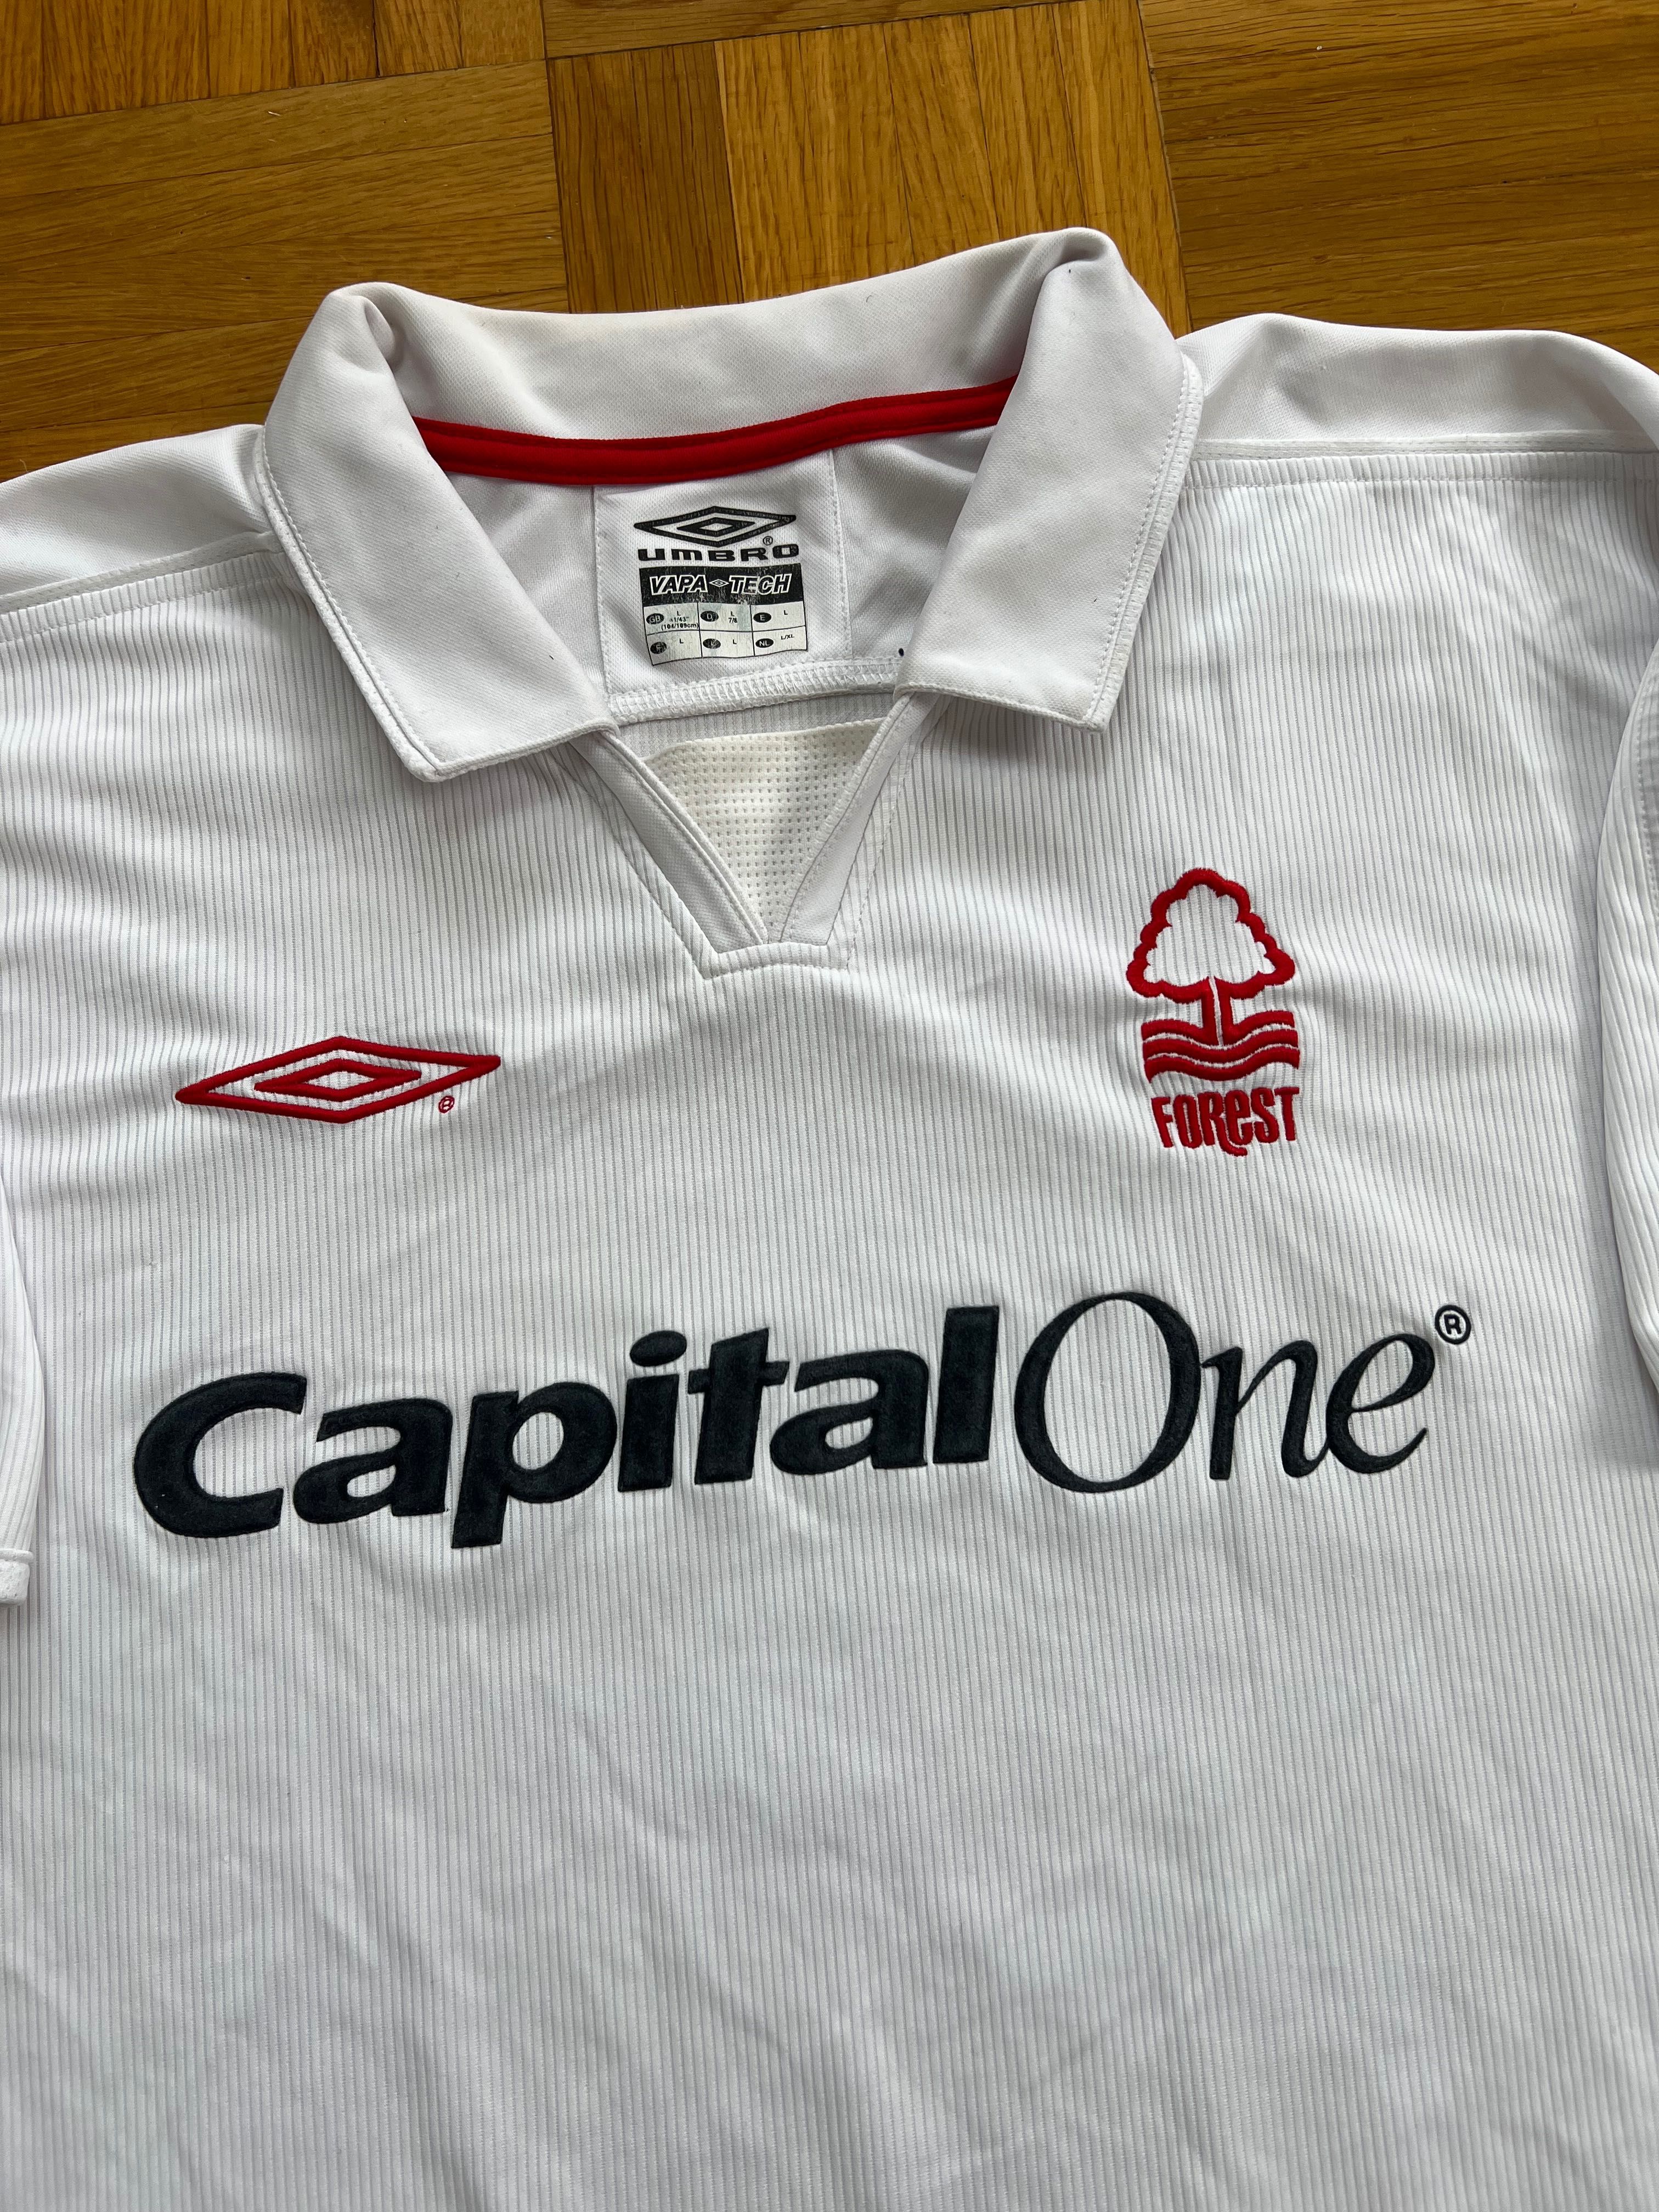 Umbro Nottingham Forest 2003/2004 Soccer Jersey koszulka